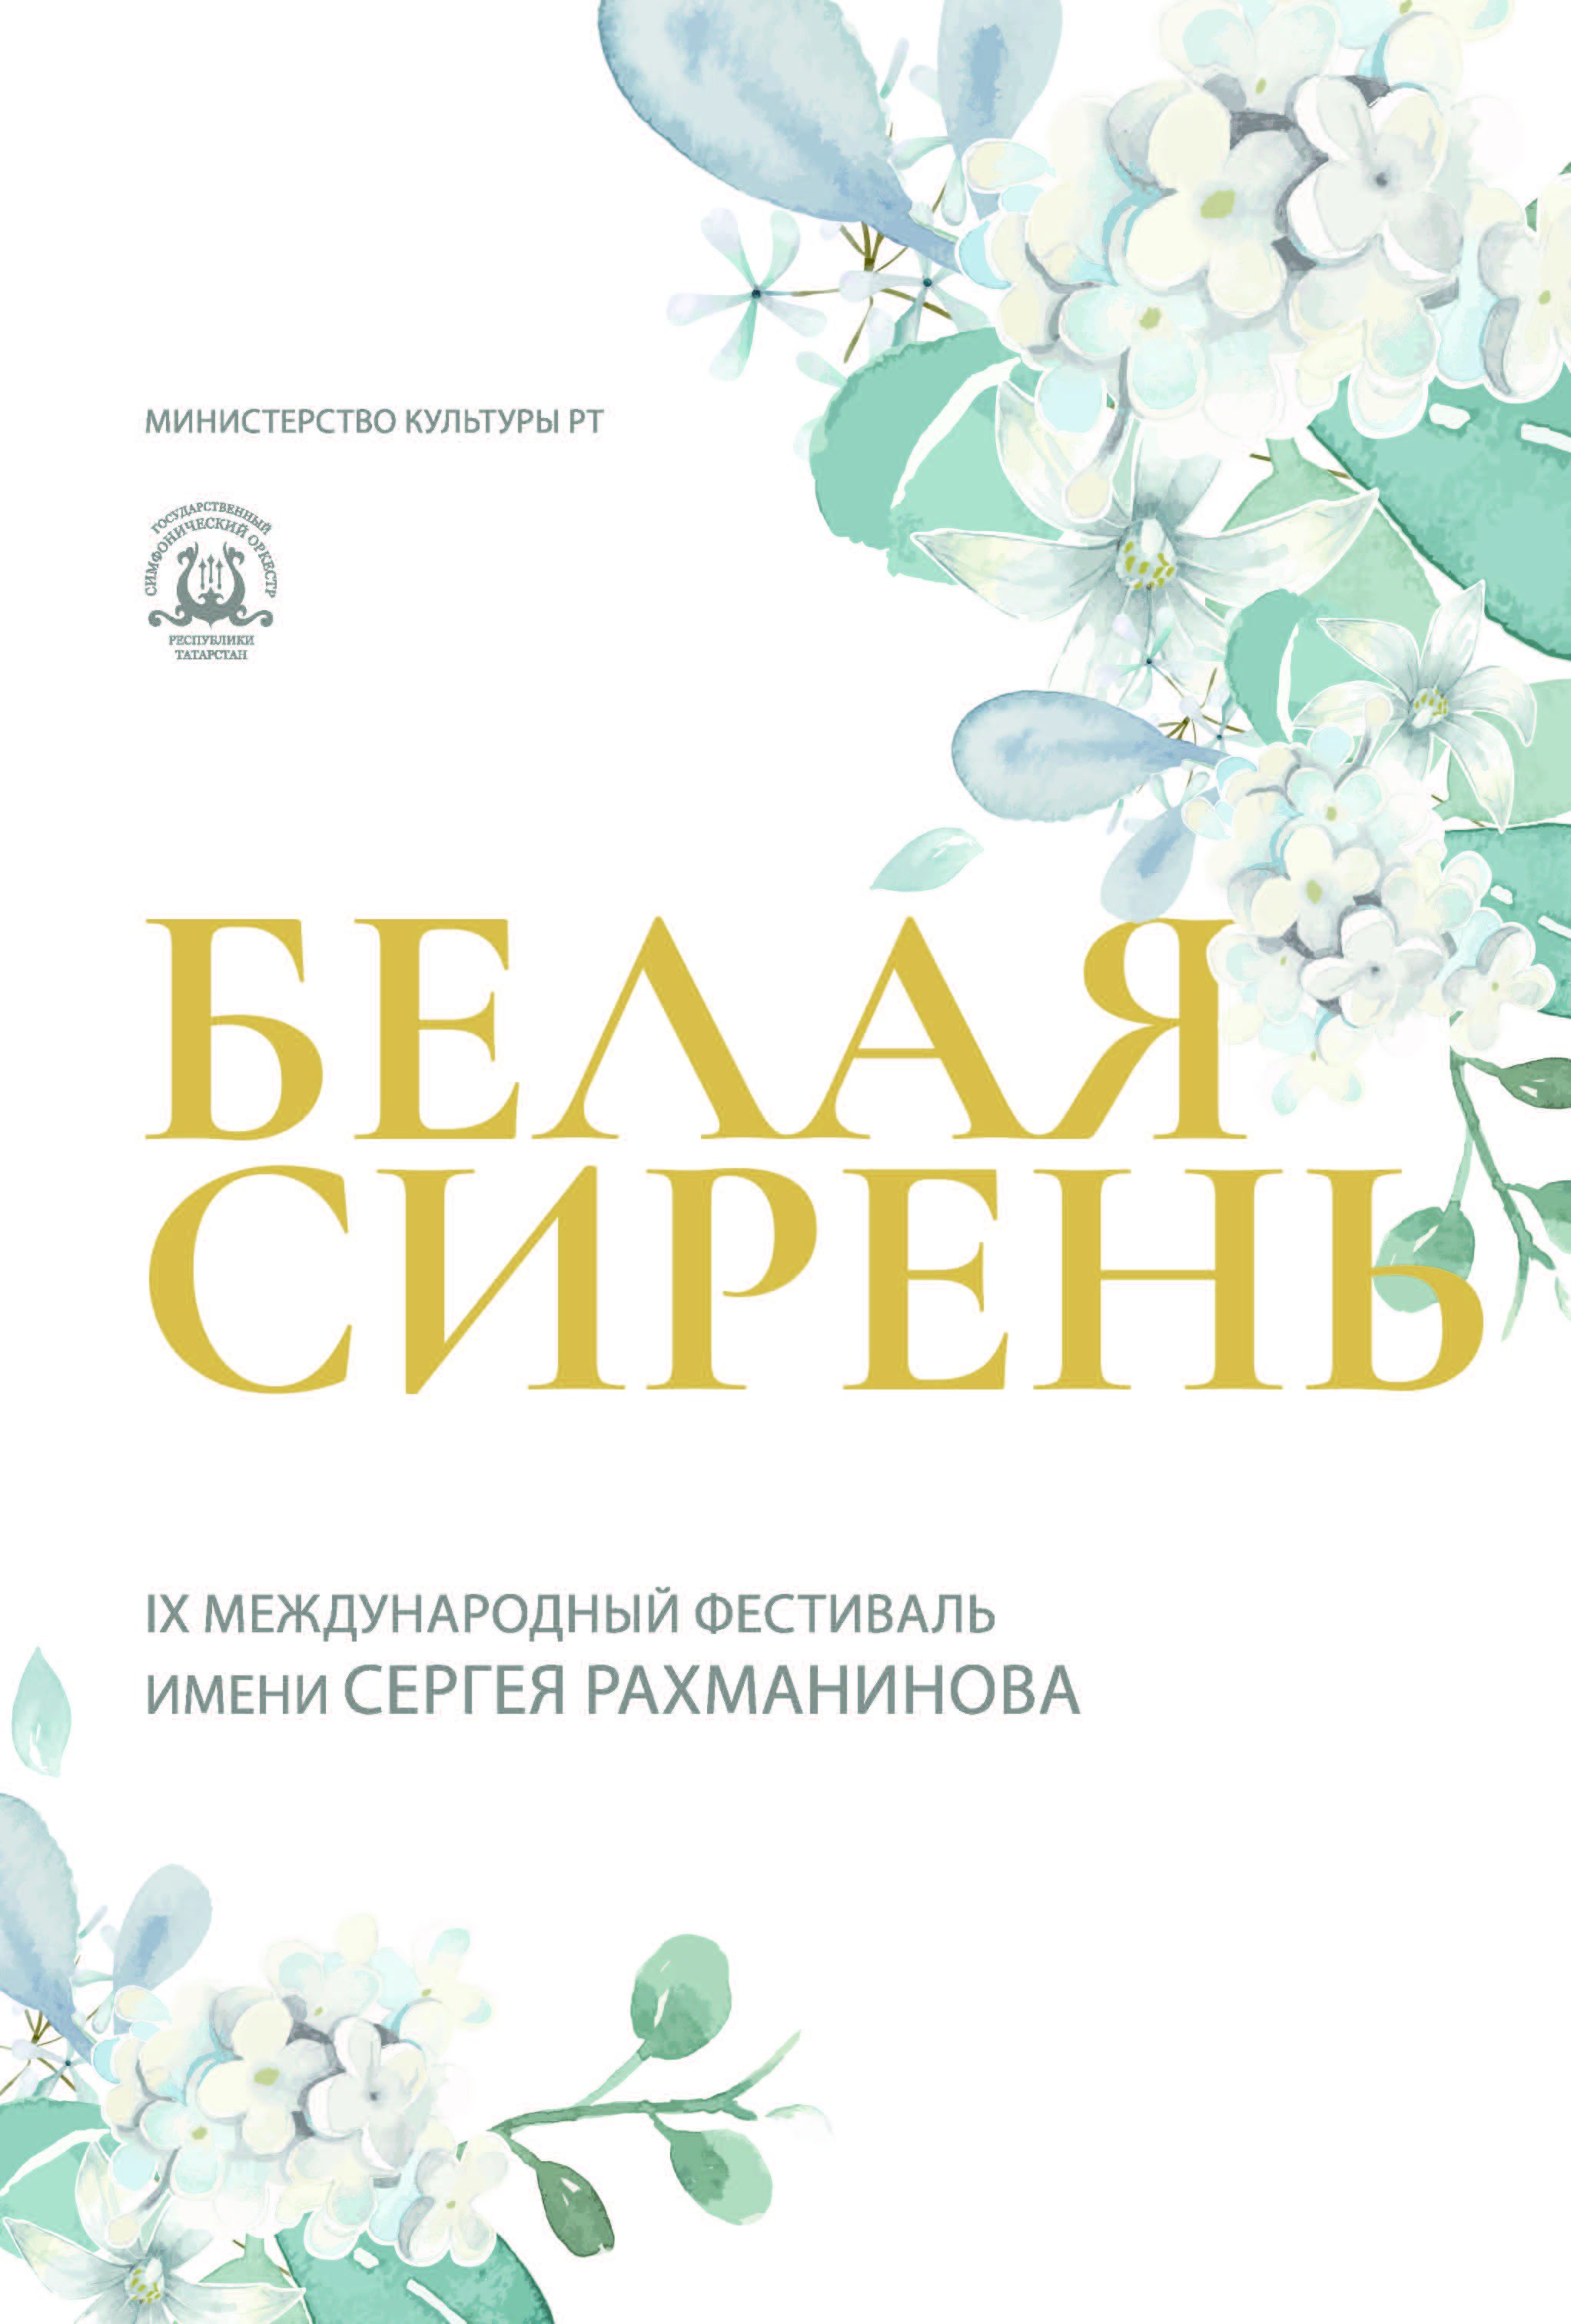 IX Международный фестиваль имени Сергея Рахманинова «Белая сирень» 